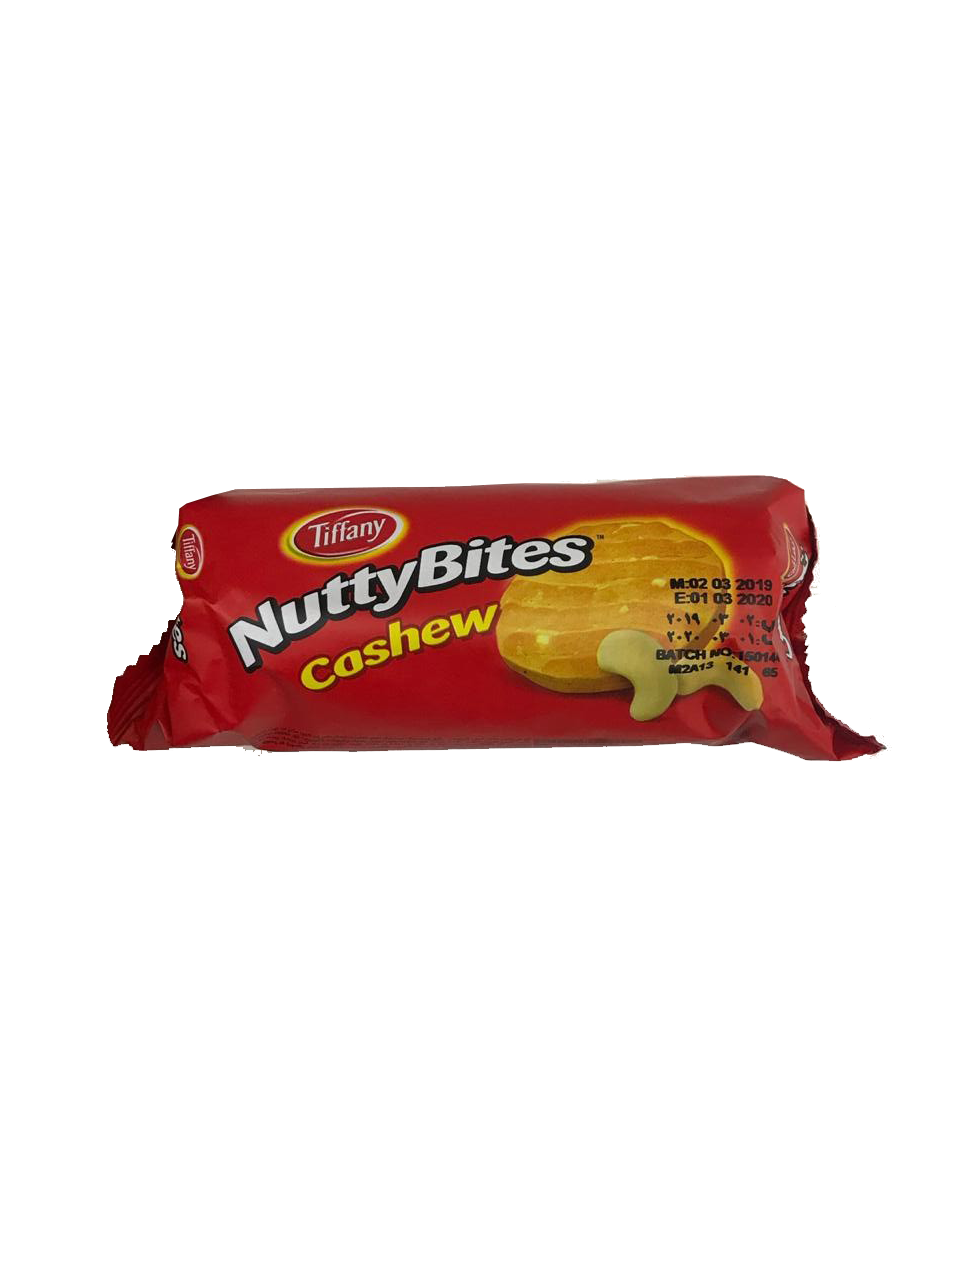 Tiffany Nutty Bites Cashew 90g